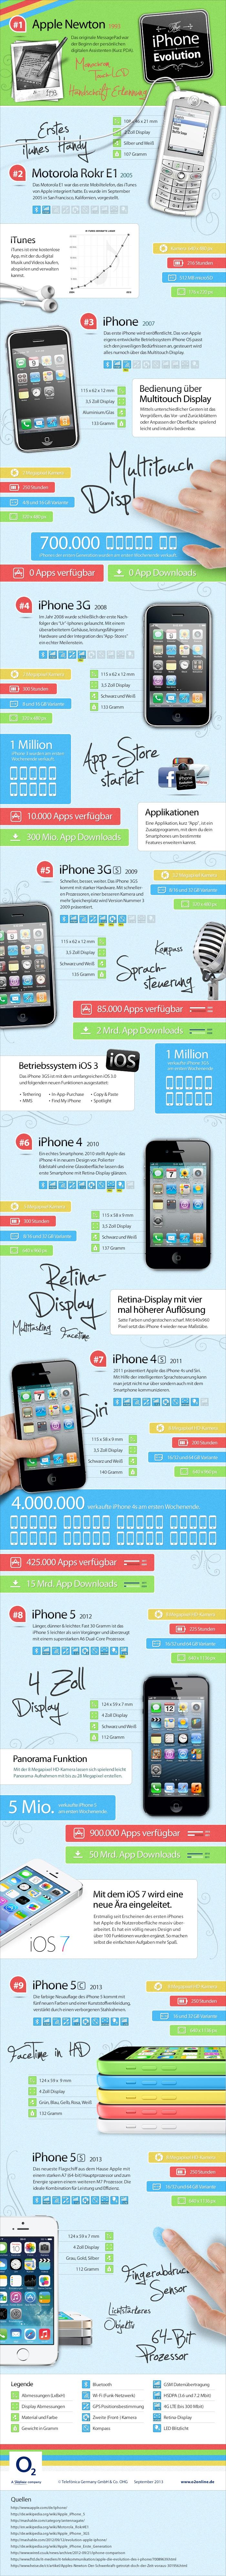 La evolución del iPhone #Infografía #Apple #iPhone #Evolución